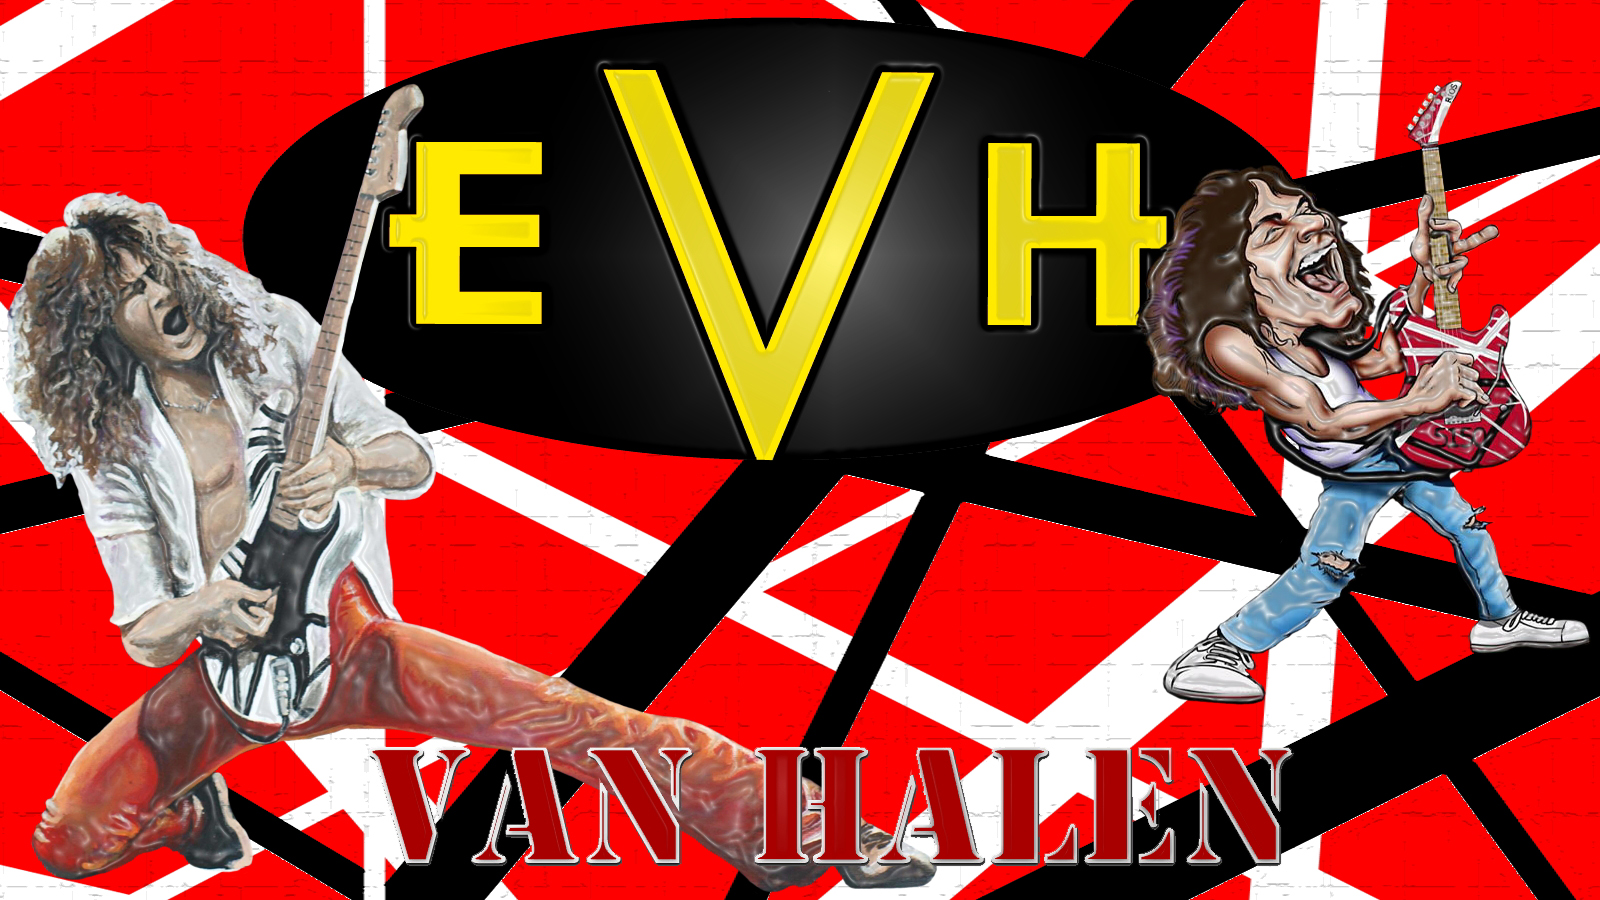 Eddie Van Halen Wallpaper Music Rock